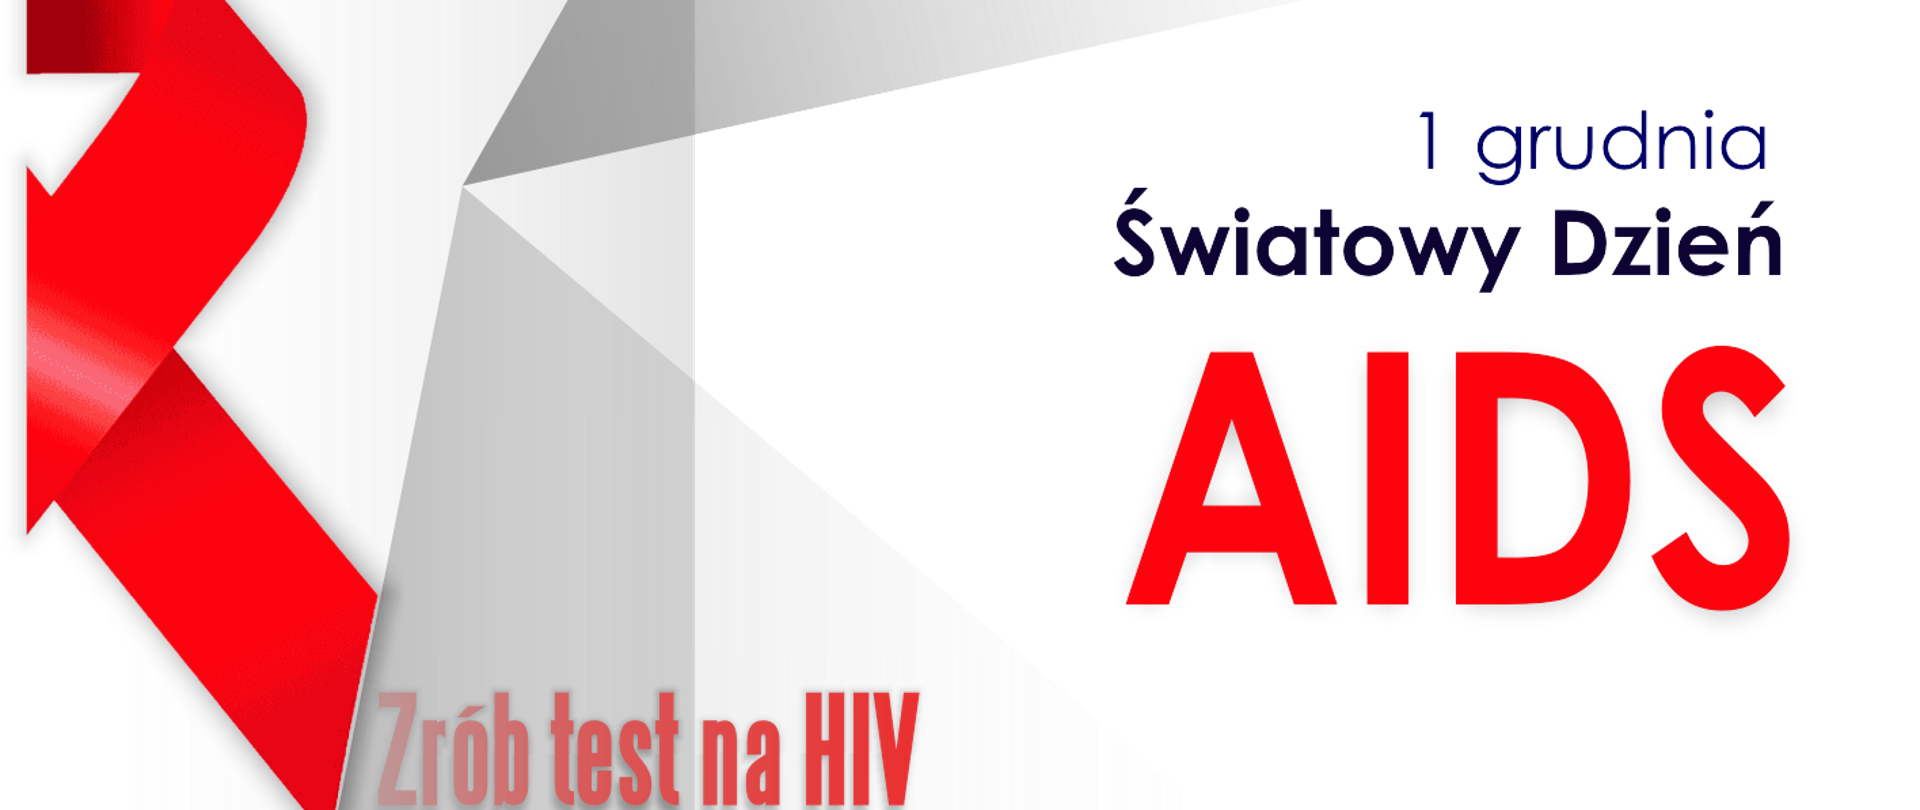 Grafika przedstawia wystającą z kadru, czerwoną wstążkę – symbol walki z HIV/AIDS i solidarności z zakażonymi na HIV. Wszystko znajduje się na szaro-białym tle. Na grafice widnieje napis: 1 grudnia Światowy Dzień AIDS. Poniżej znajduje się napis: zrób test na HIV